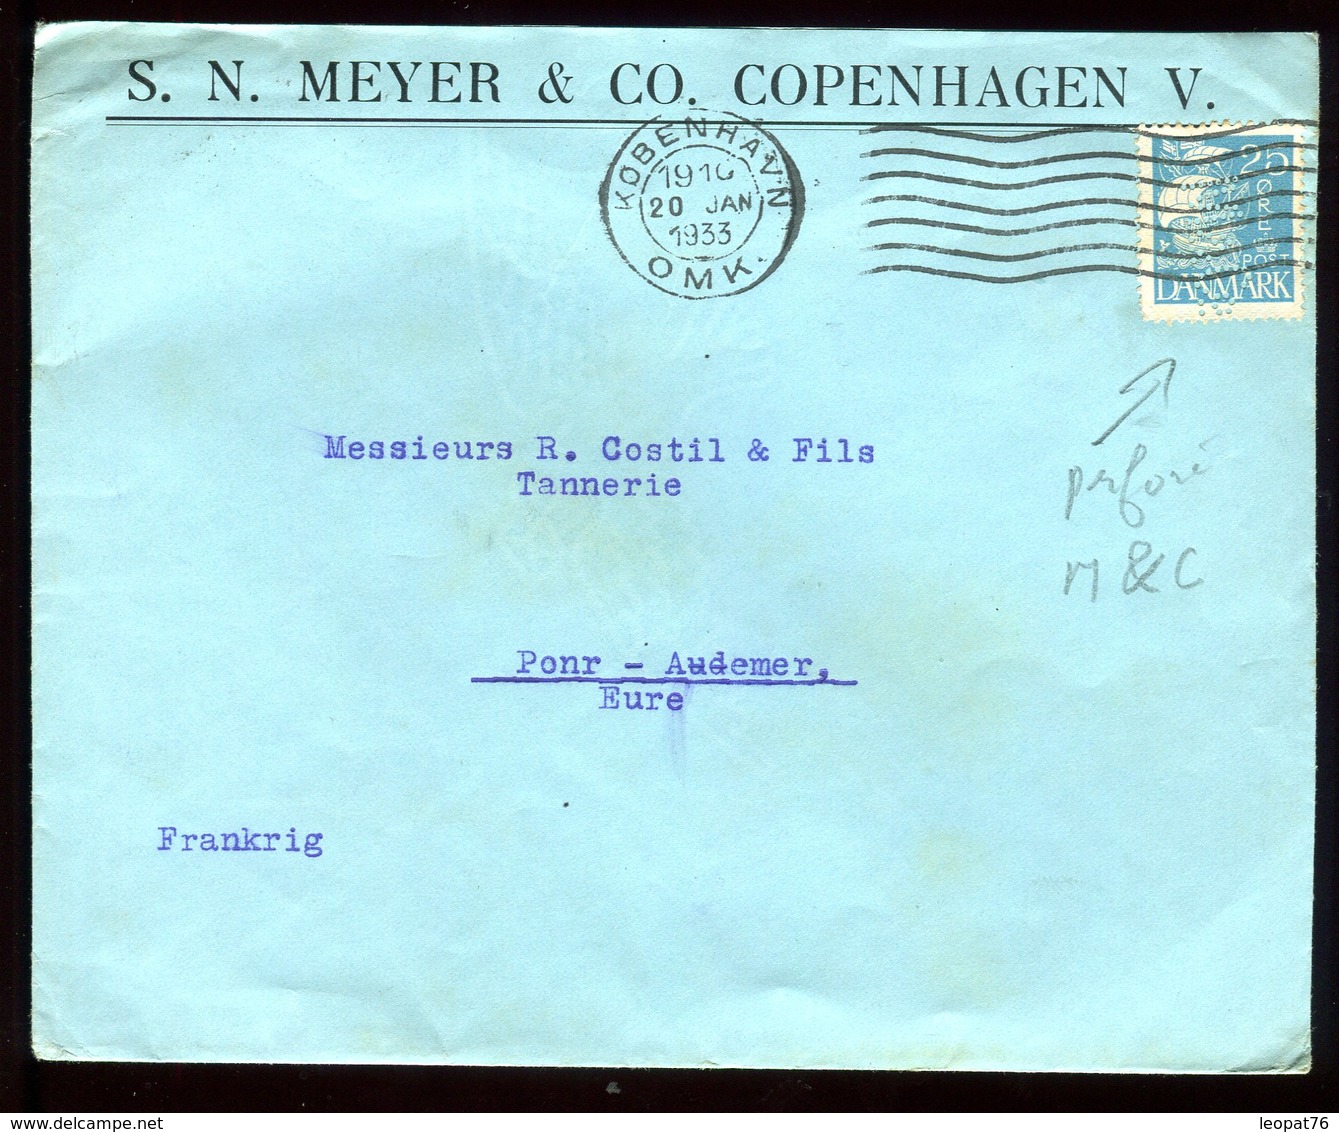 Danemark - Perforé M&C Sur Enveloppe Commerciale De Copenhague Pour La France En 1933 - Réf O40 - Covers & Documents